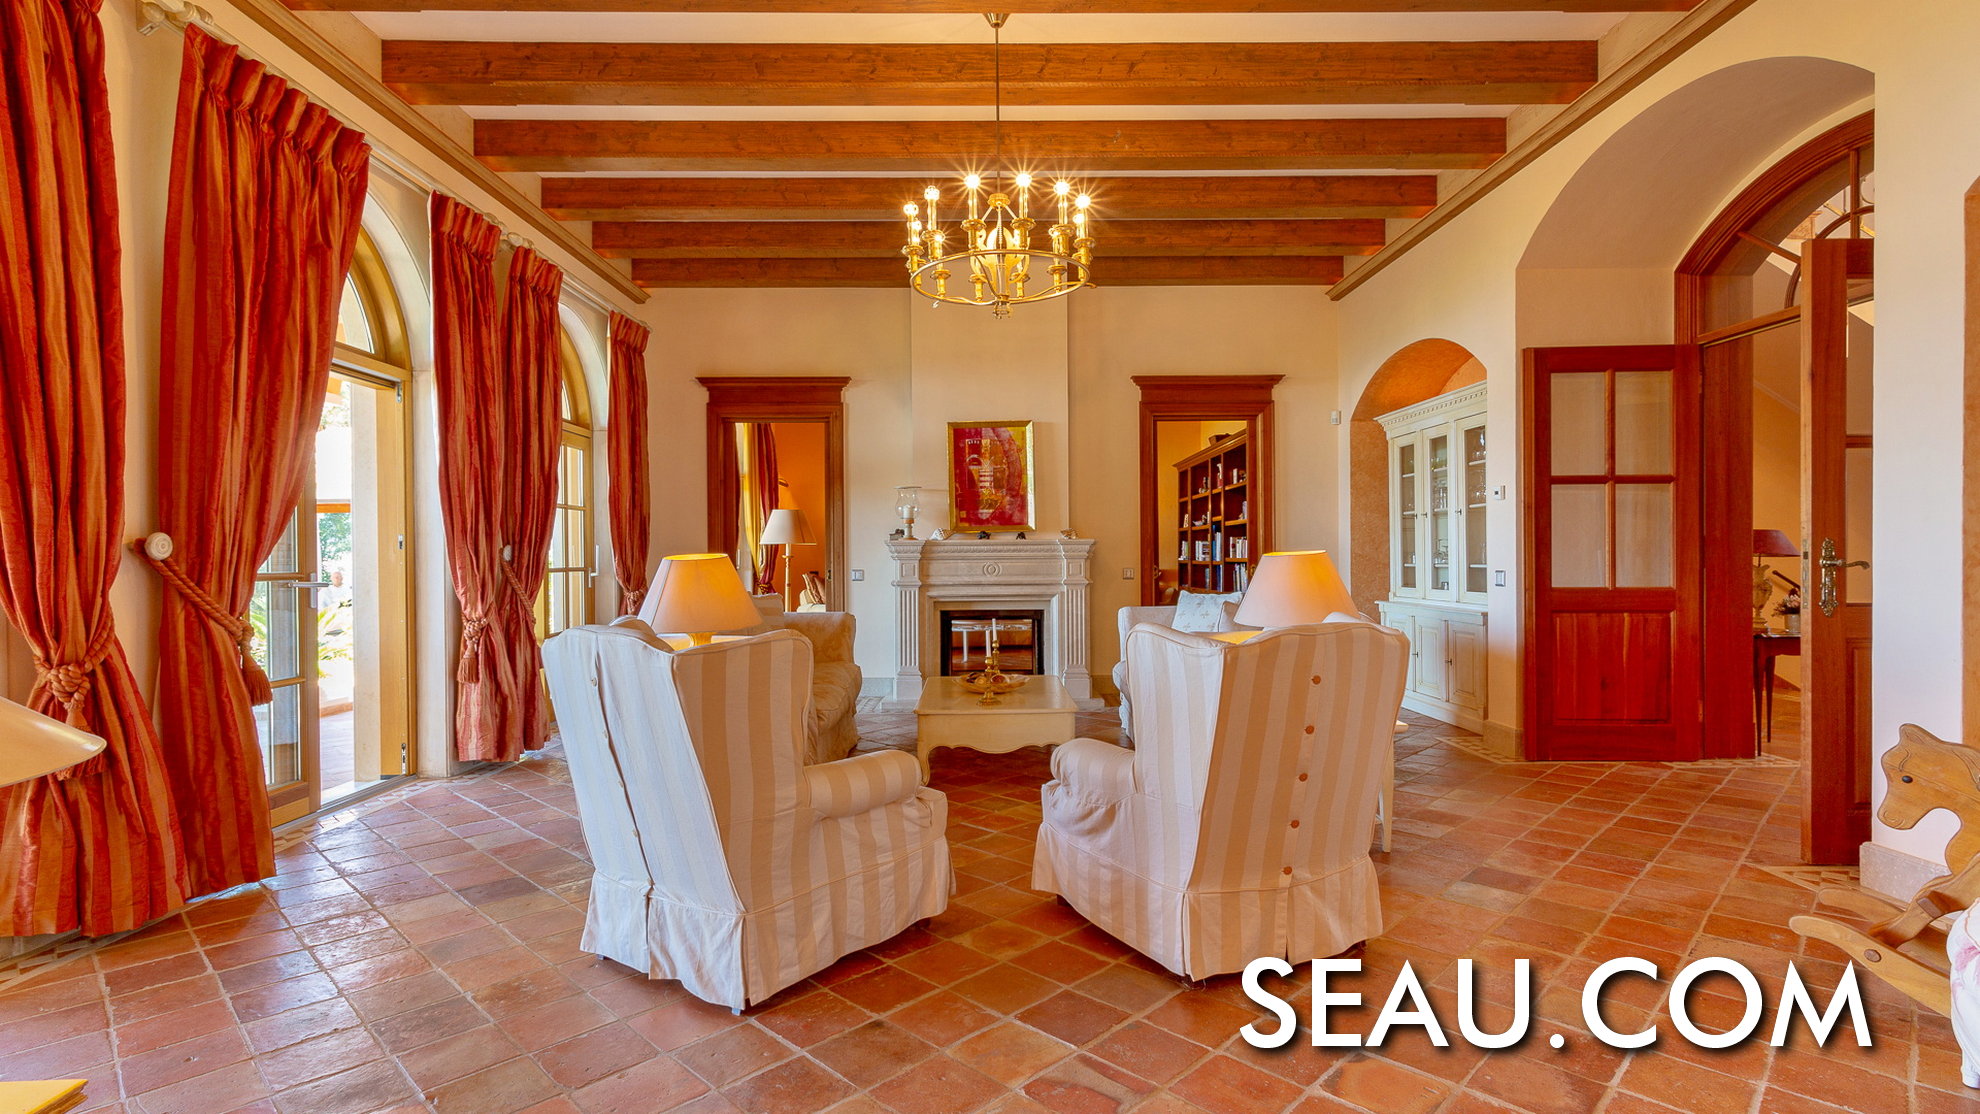 Le salon est un espace accueillant, entouré de matériaux nobles en bois et en pierre naturelle.